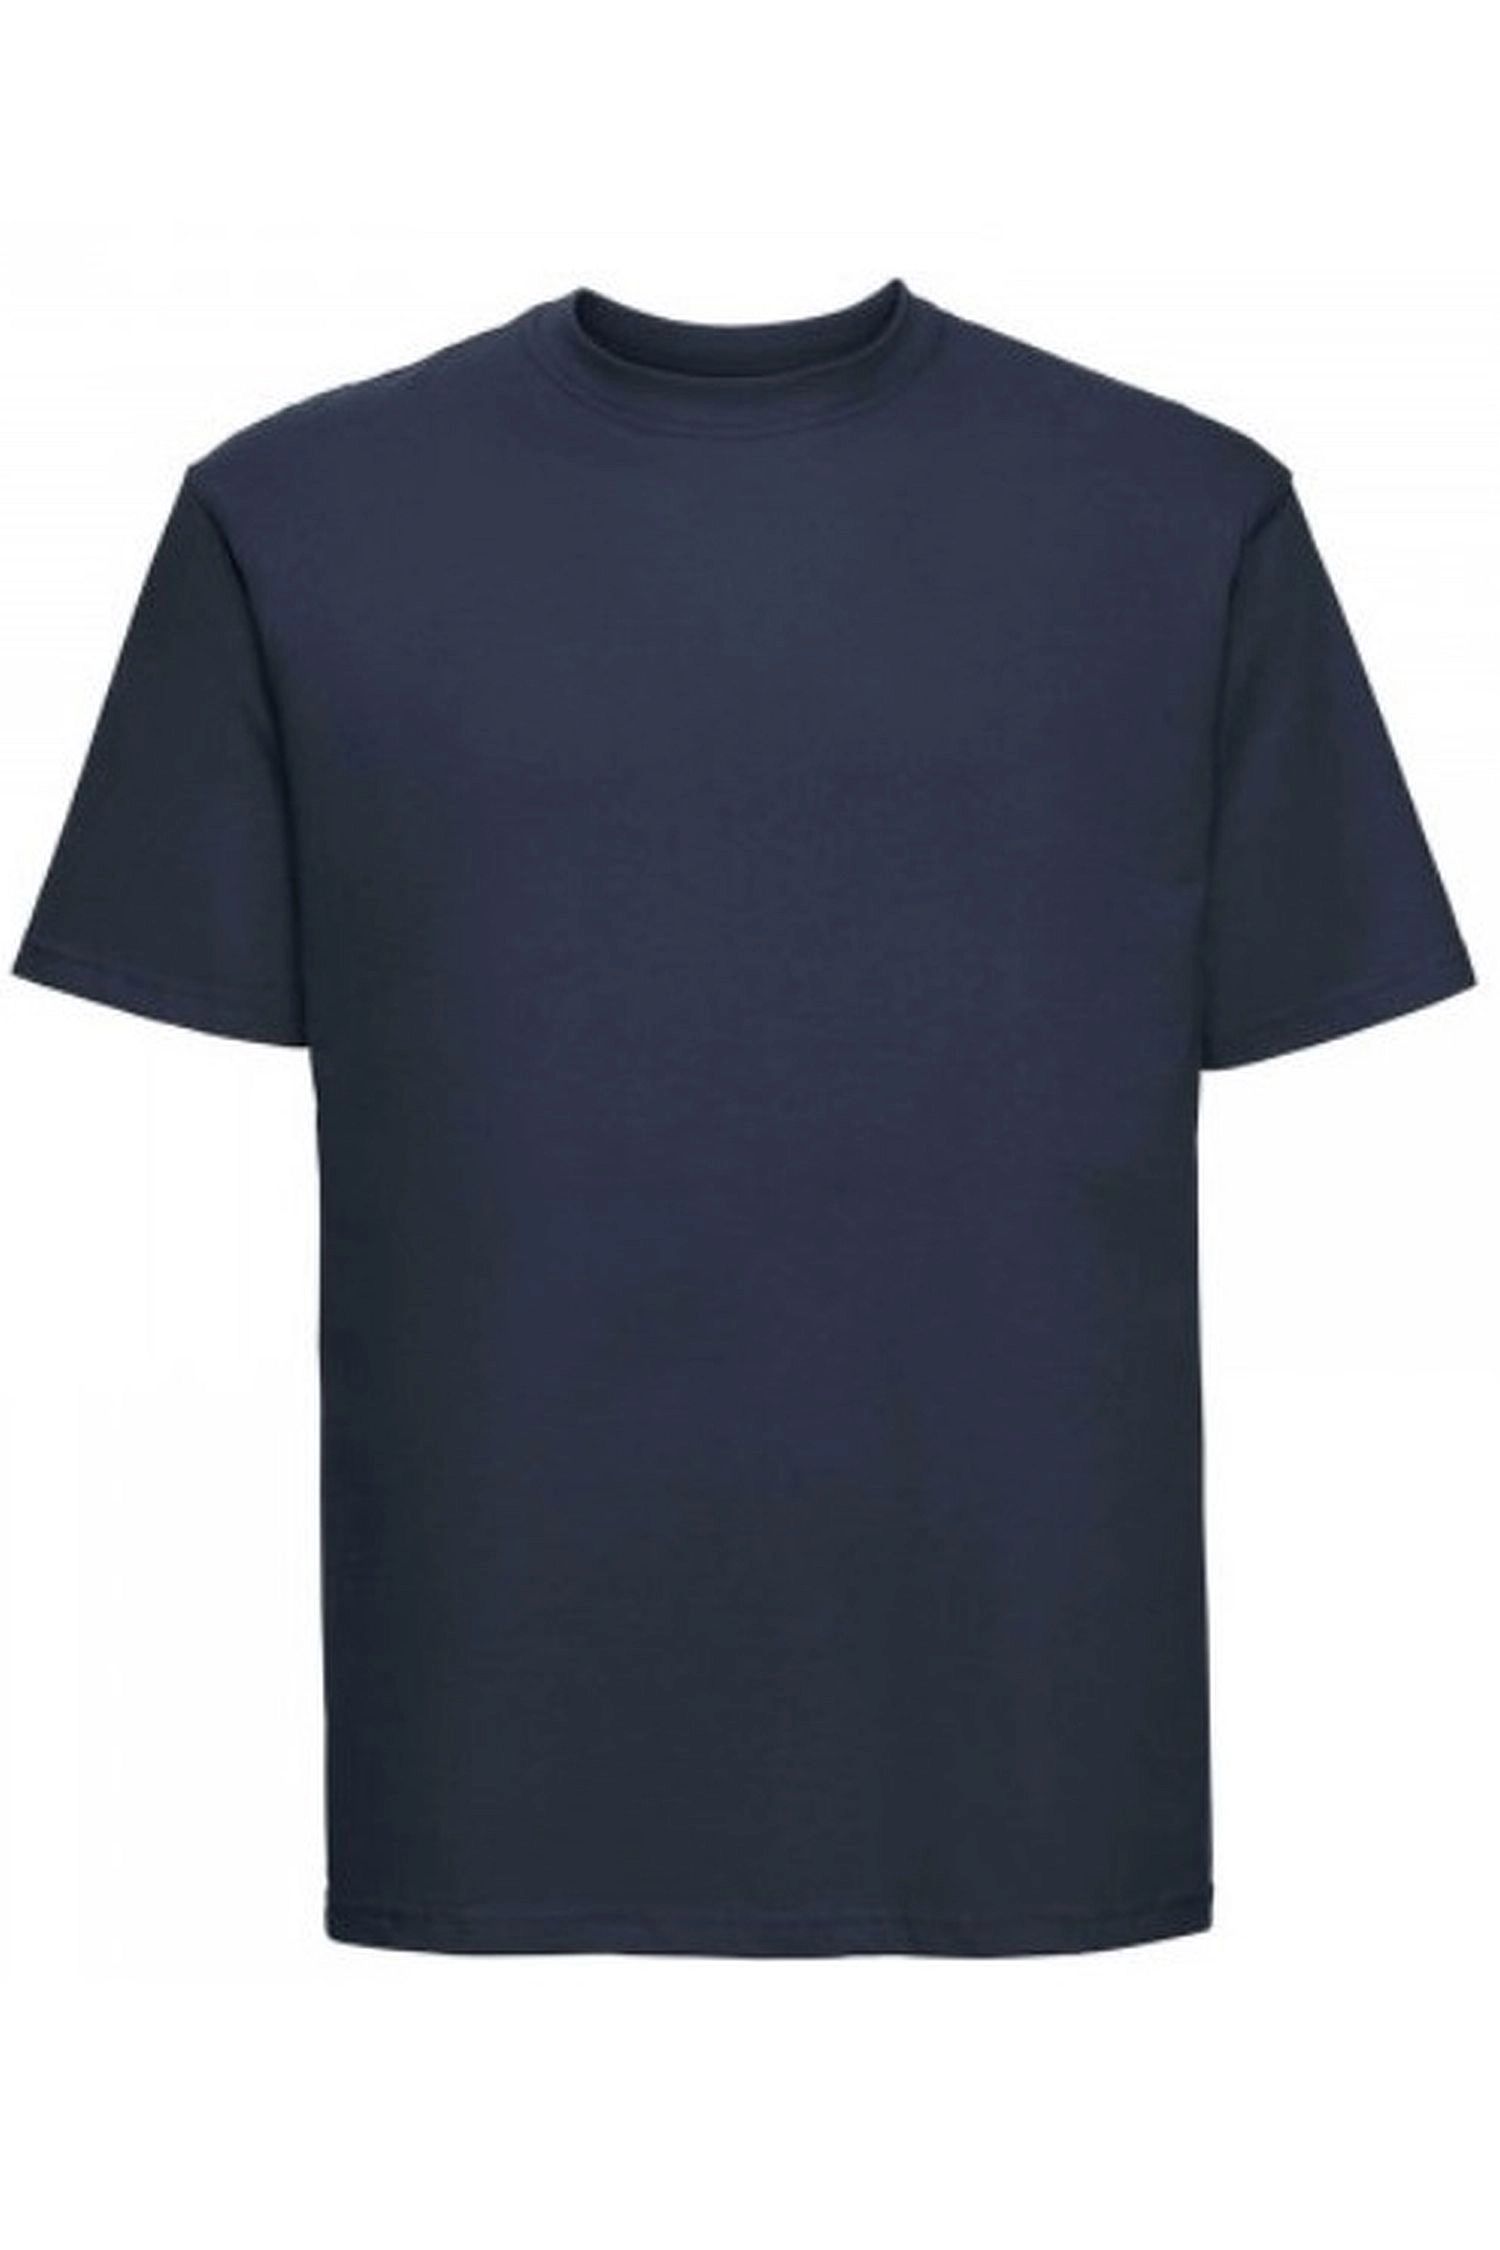 Pánské tričko 002 dark blue